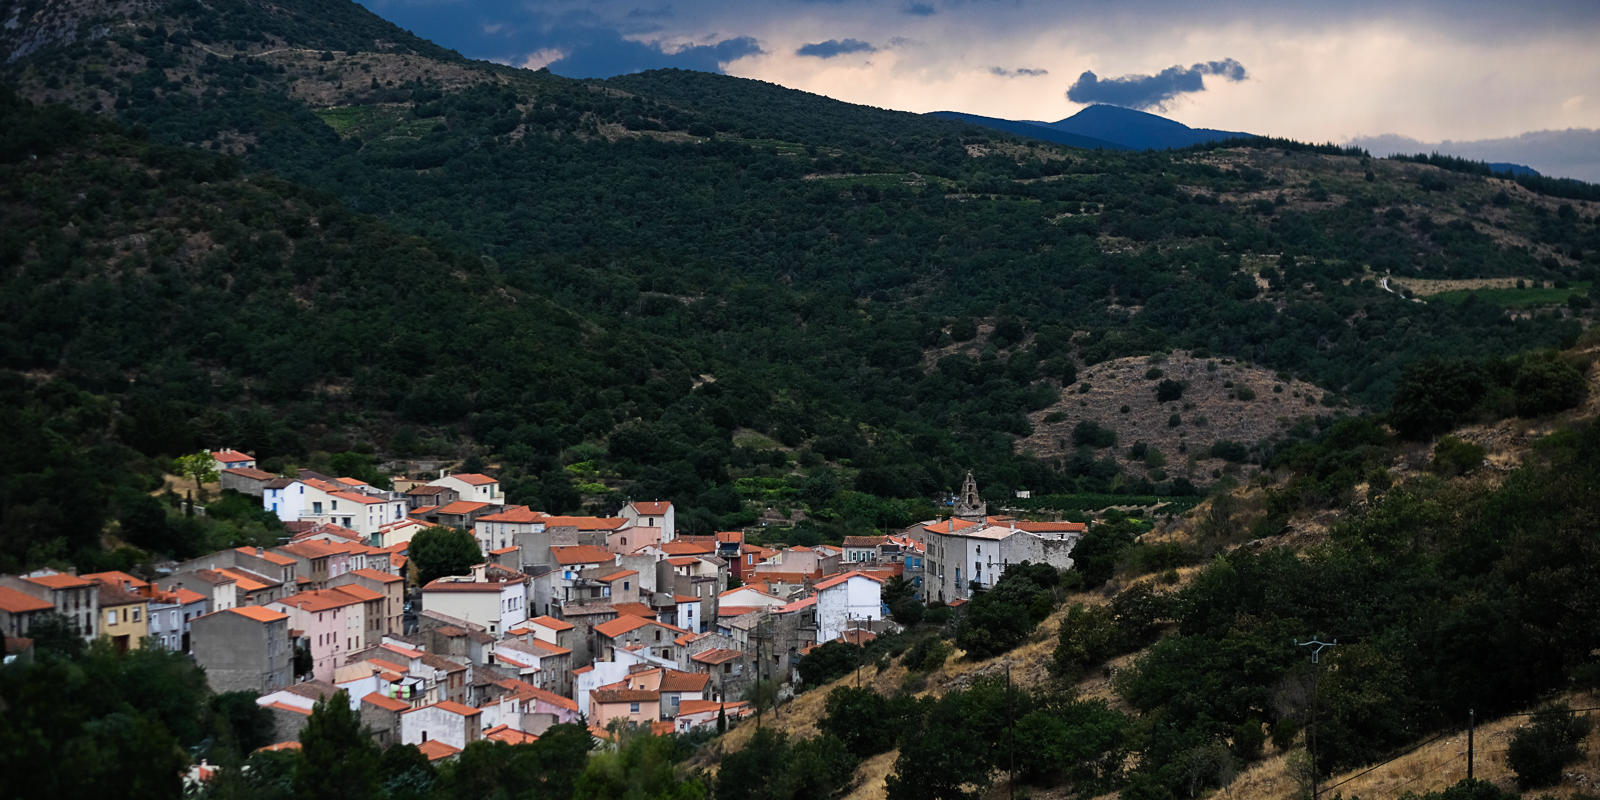 Immobilier : dans les Pyrénées-Orientales, un marché dynamique mais prudent